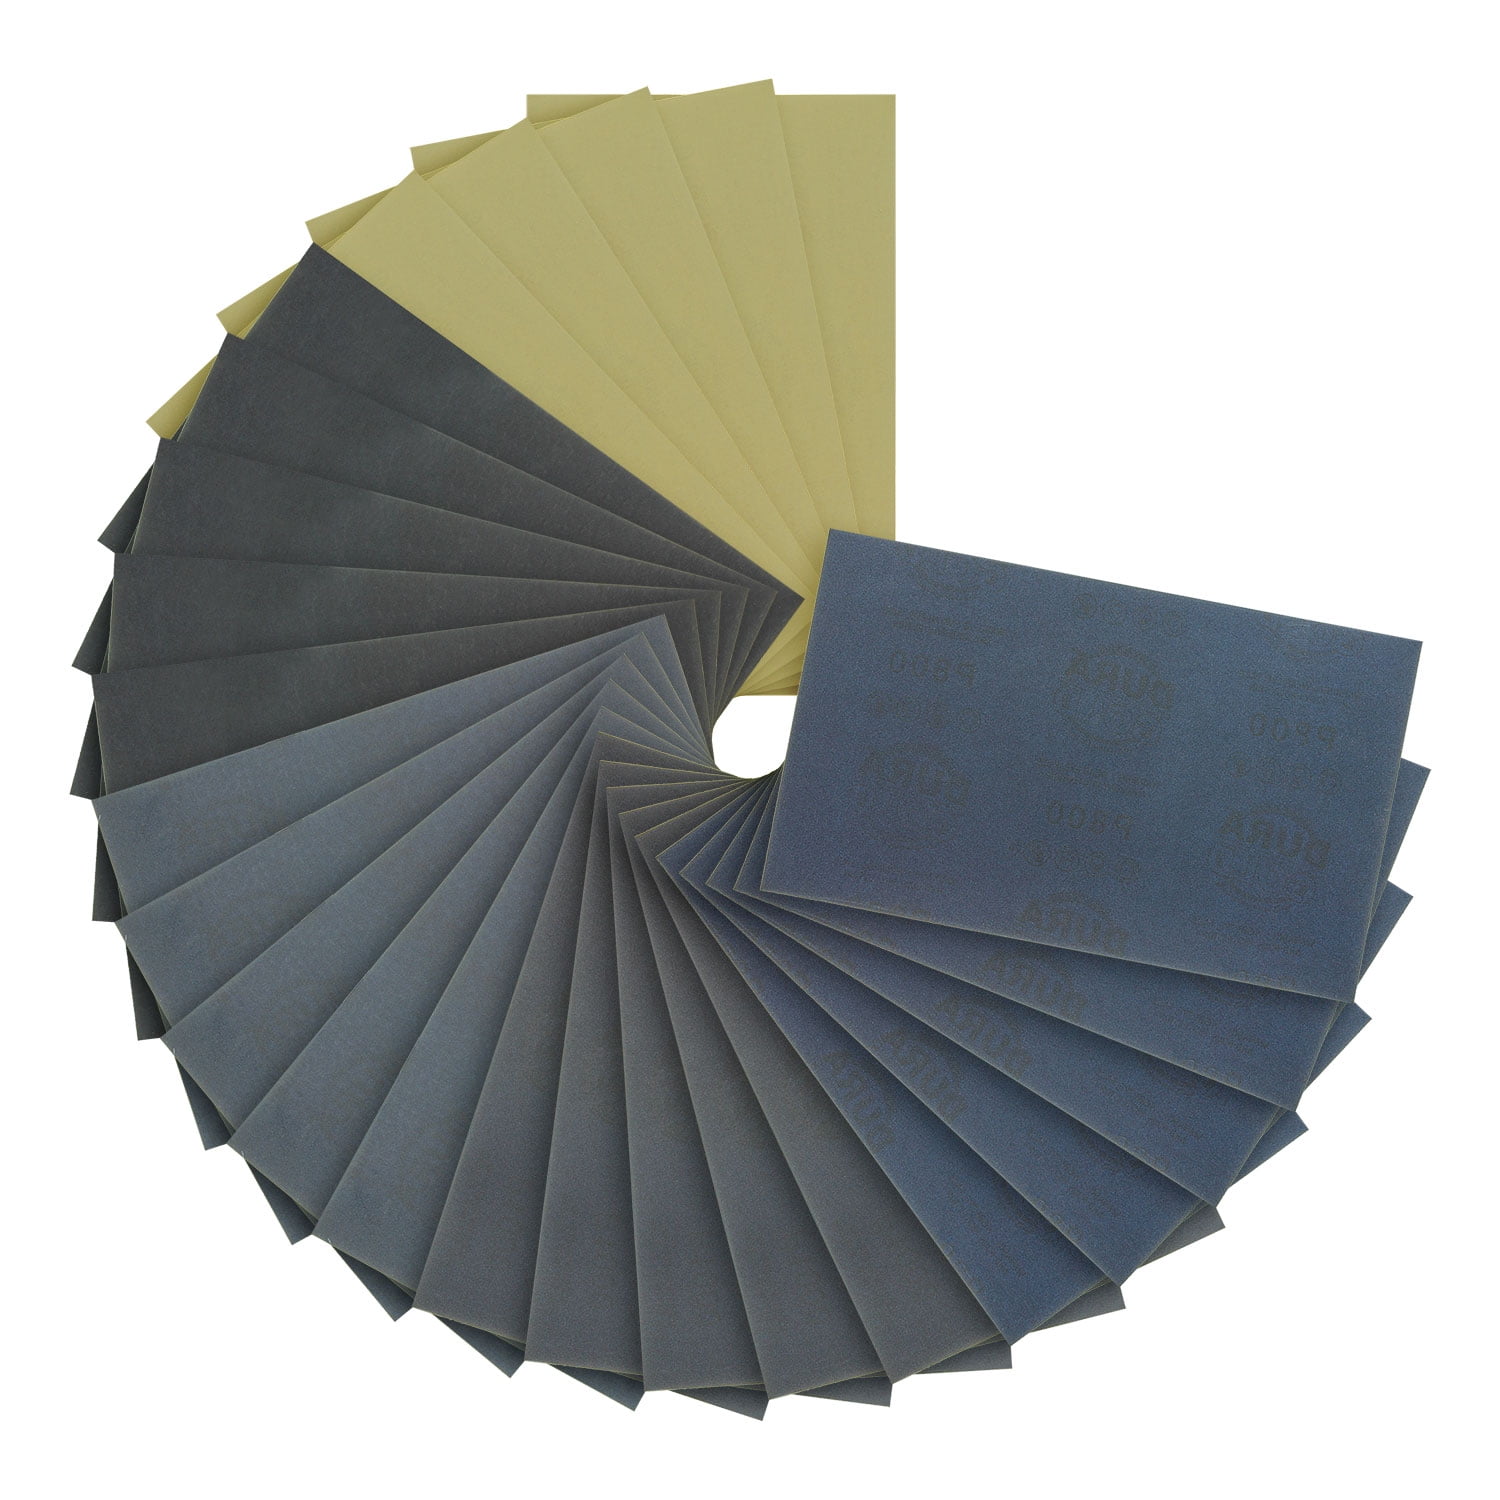 Bates- Sandpaper, 18 Pack, Assorted Grit, Sandpaper Assortment, Sand Paper,  Sandpaper for Metal 